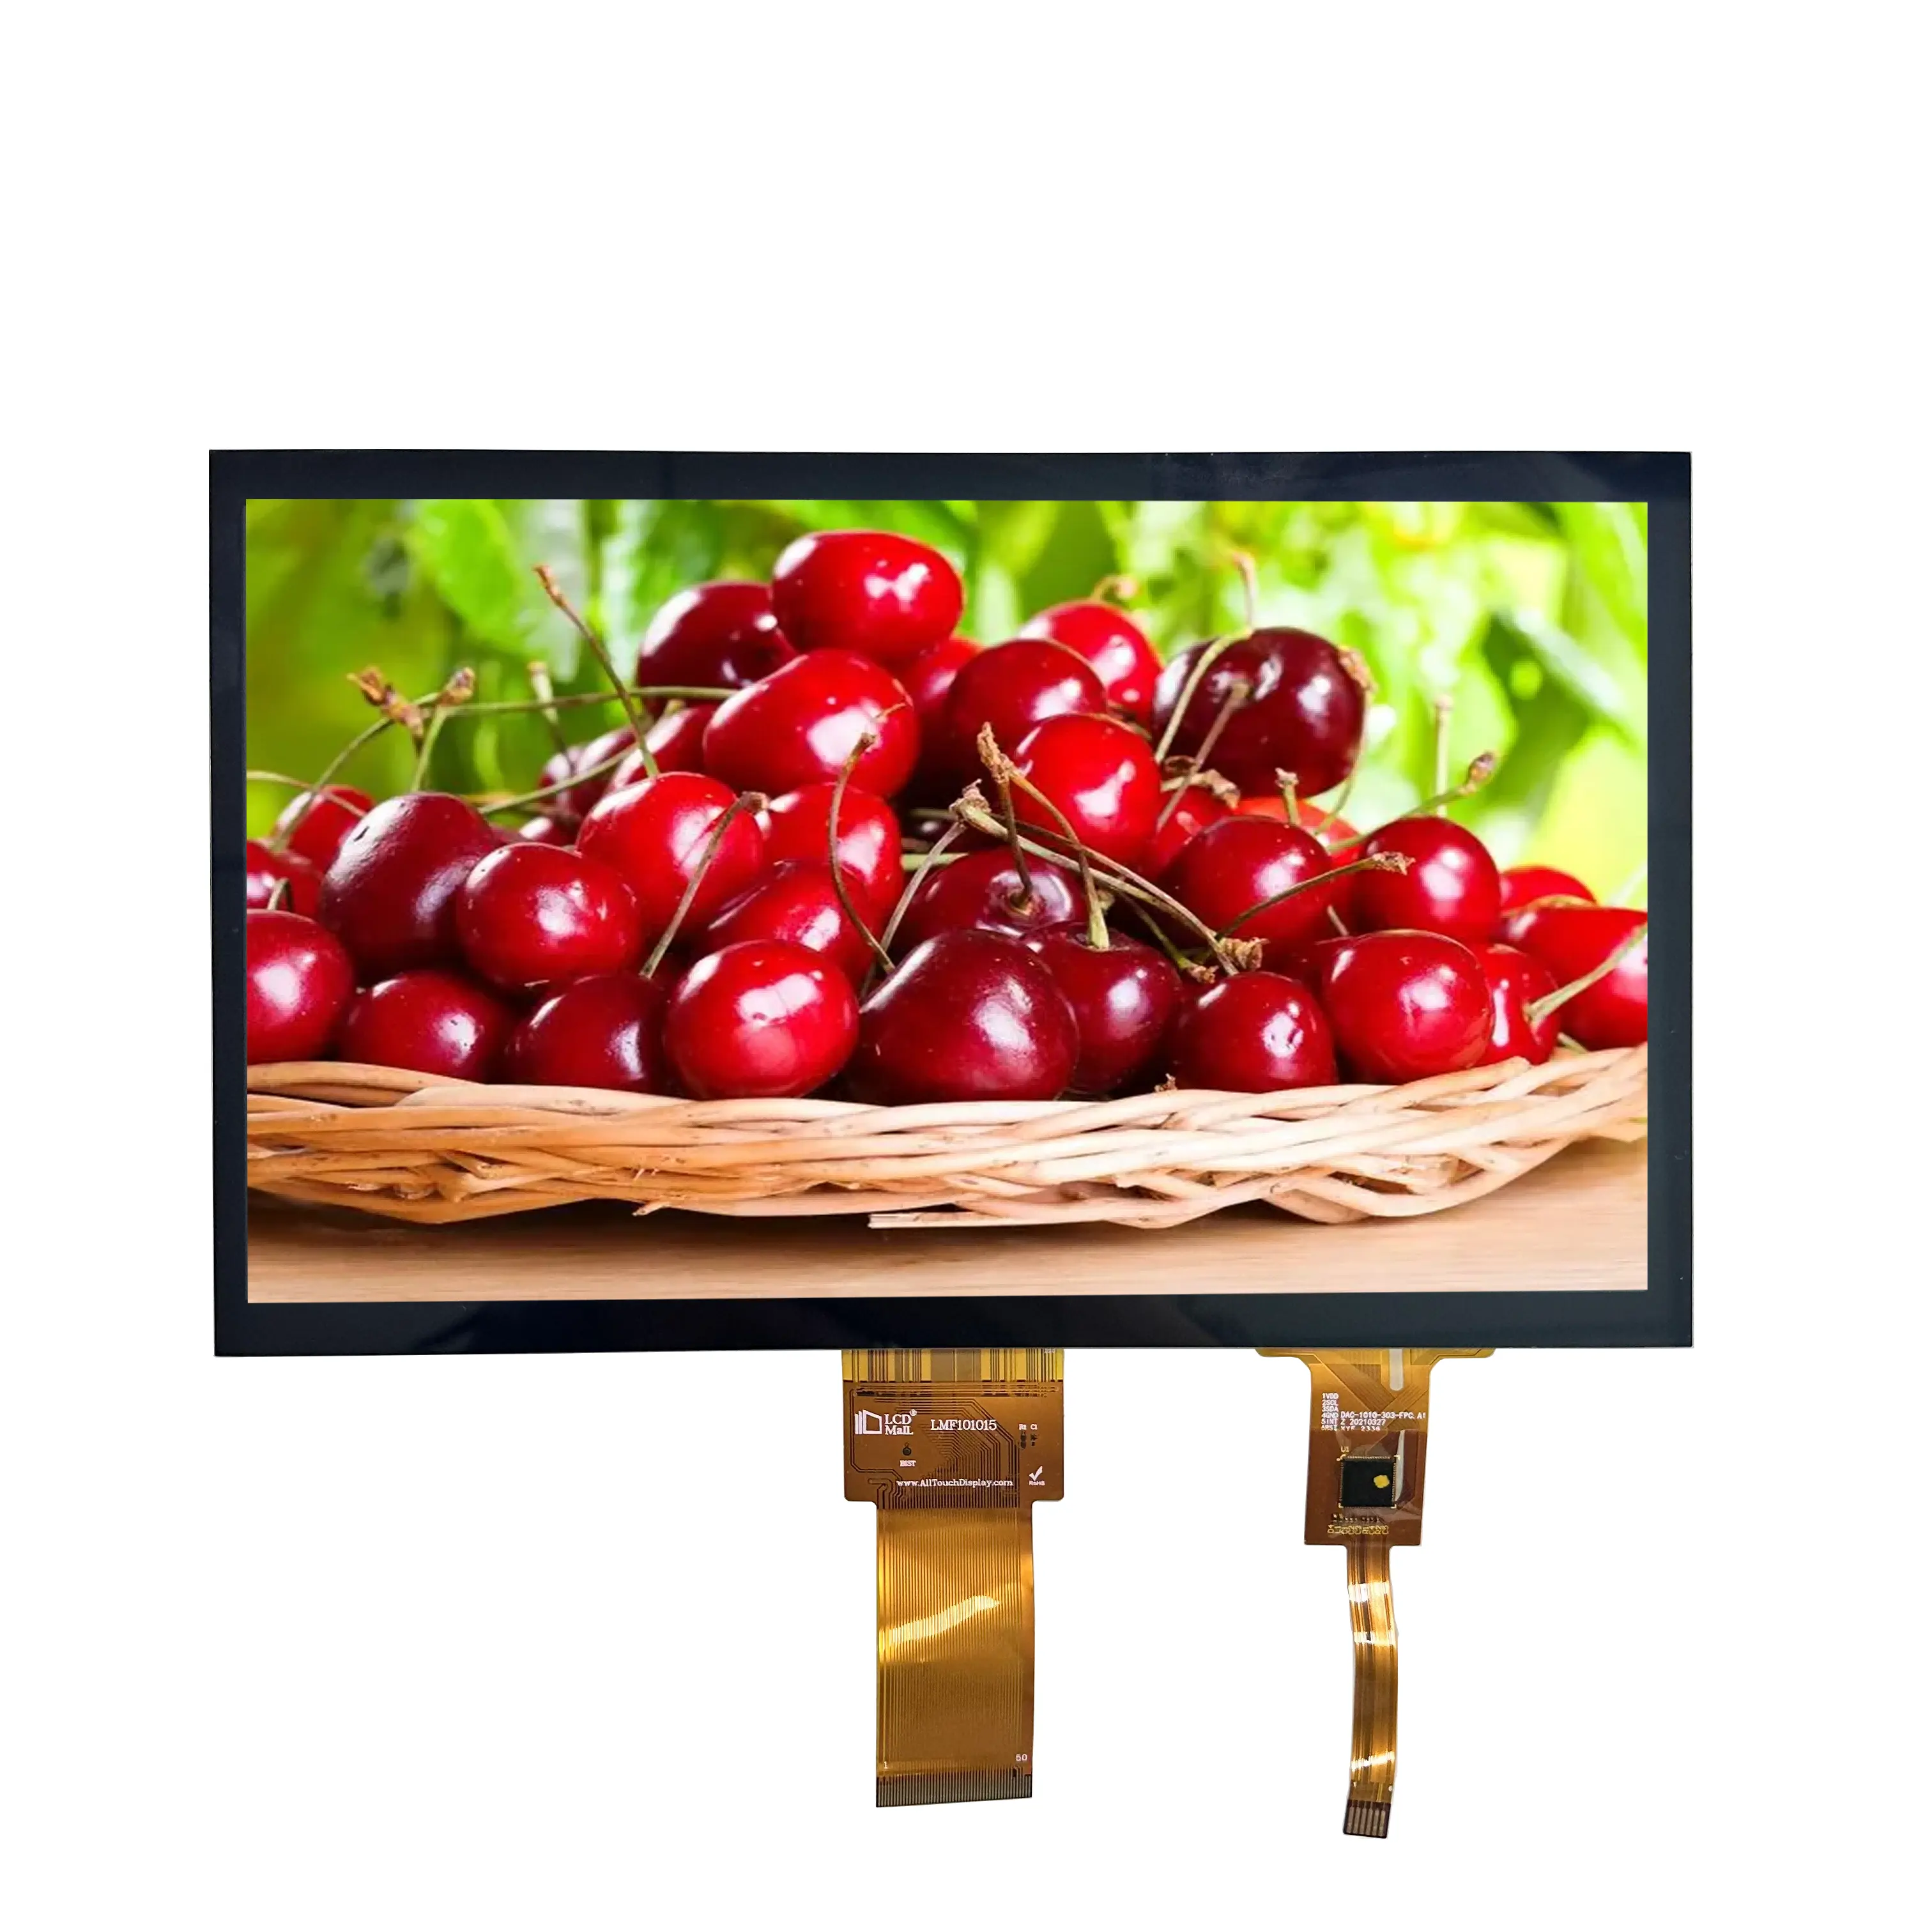 IPS LCD modülü 10.1 inç TFT LCD ekran 1024*600 çözünürlük yazıcı için RGB arayüzü ile kapasitif dokunmatik